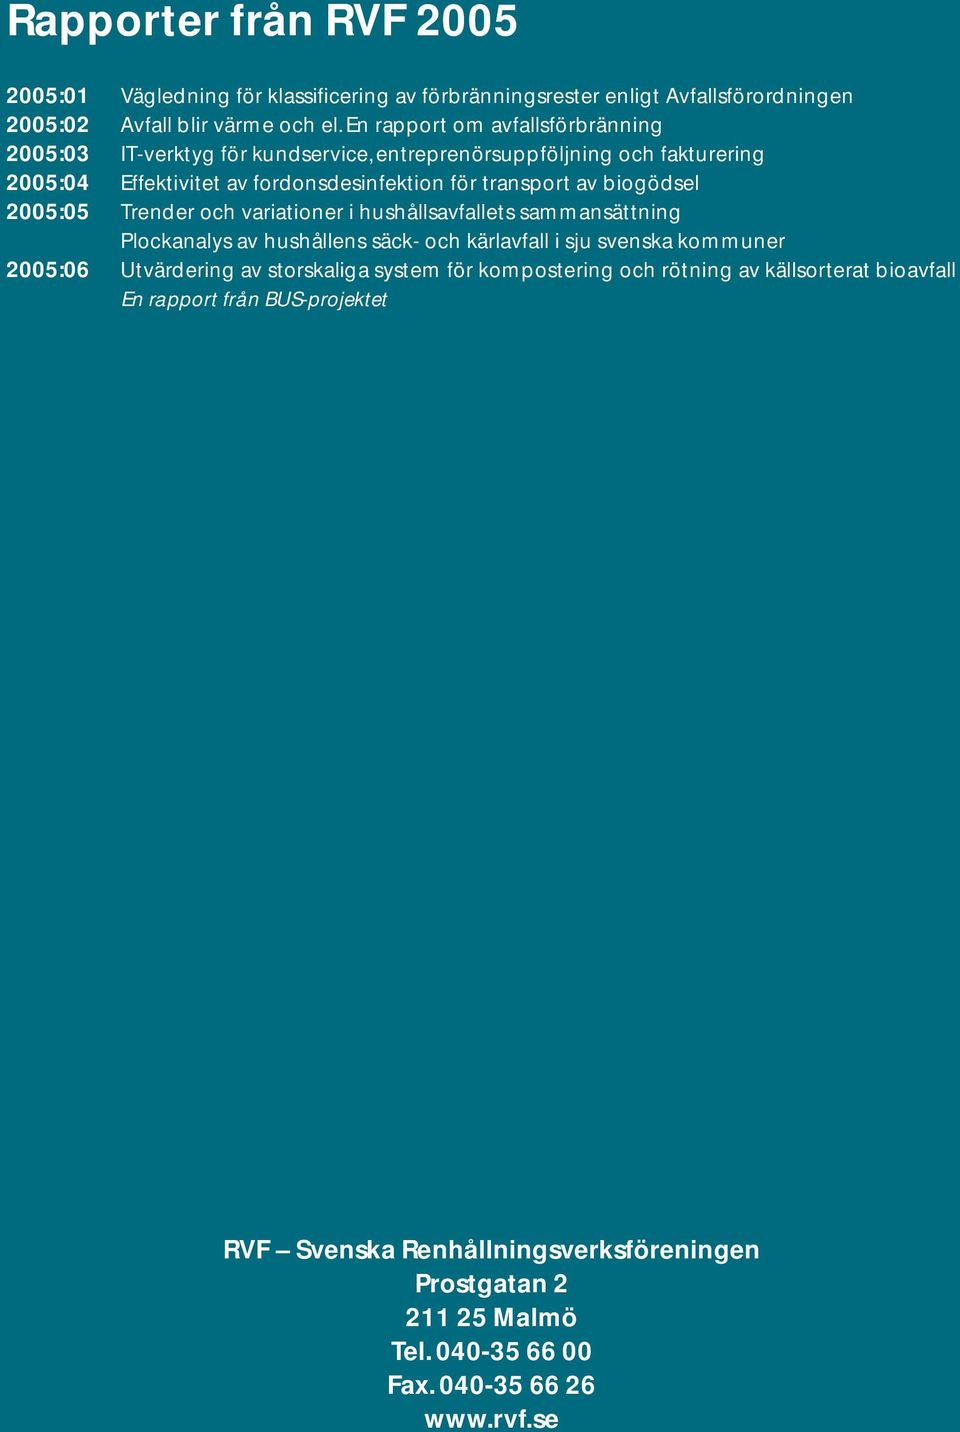 biogödsel 2005:05 Trender och variationer i hushållsavfallets sammansättning Plockanalys av hushållens säck- och kärlavfall i sju svenska kommuner 2005:06 Utvärdering av